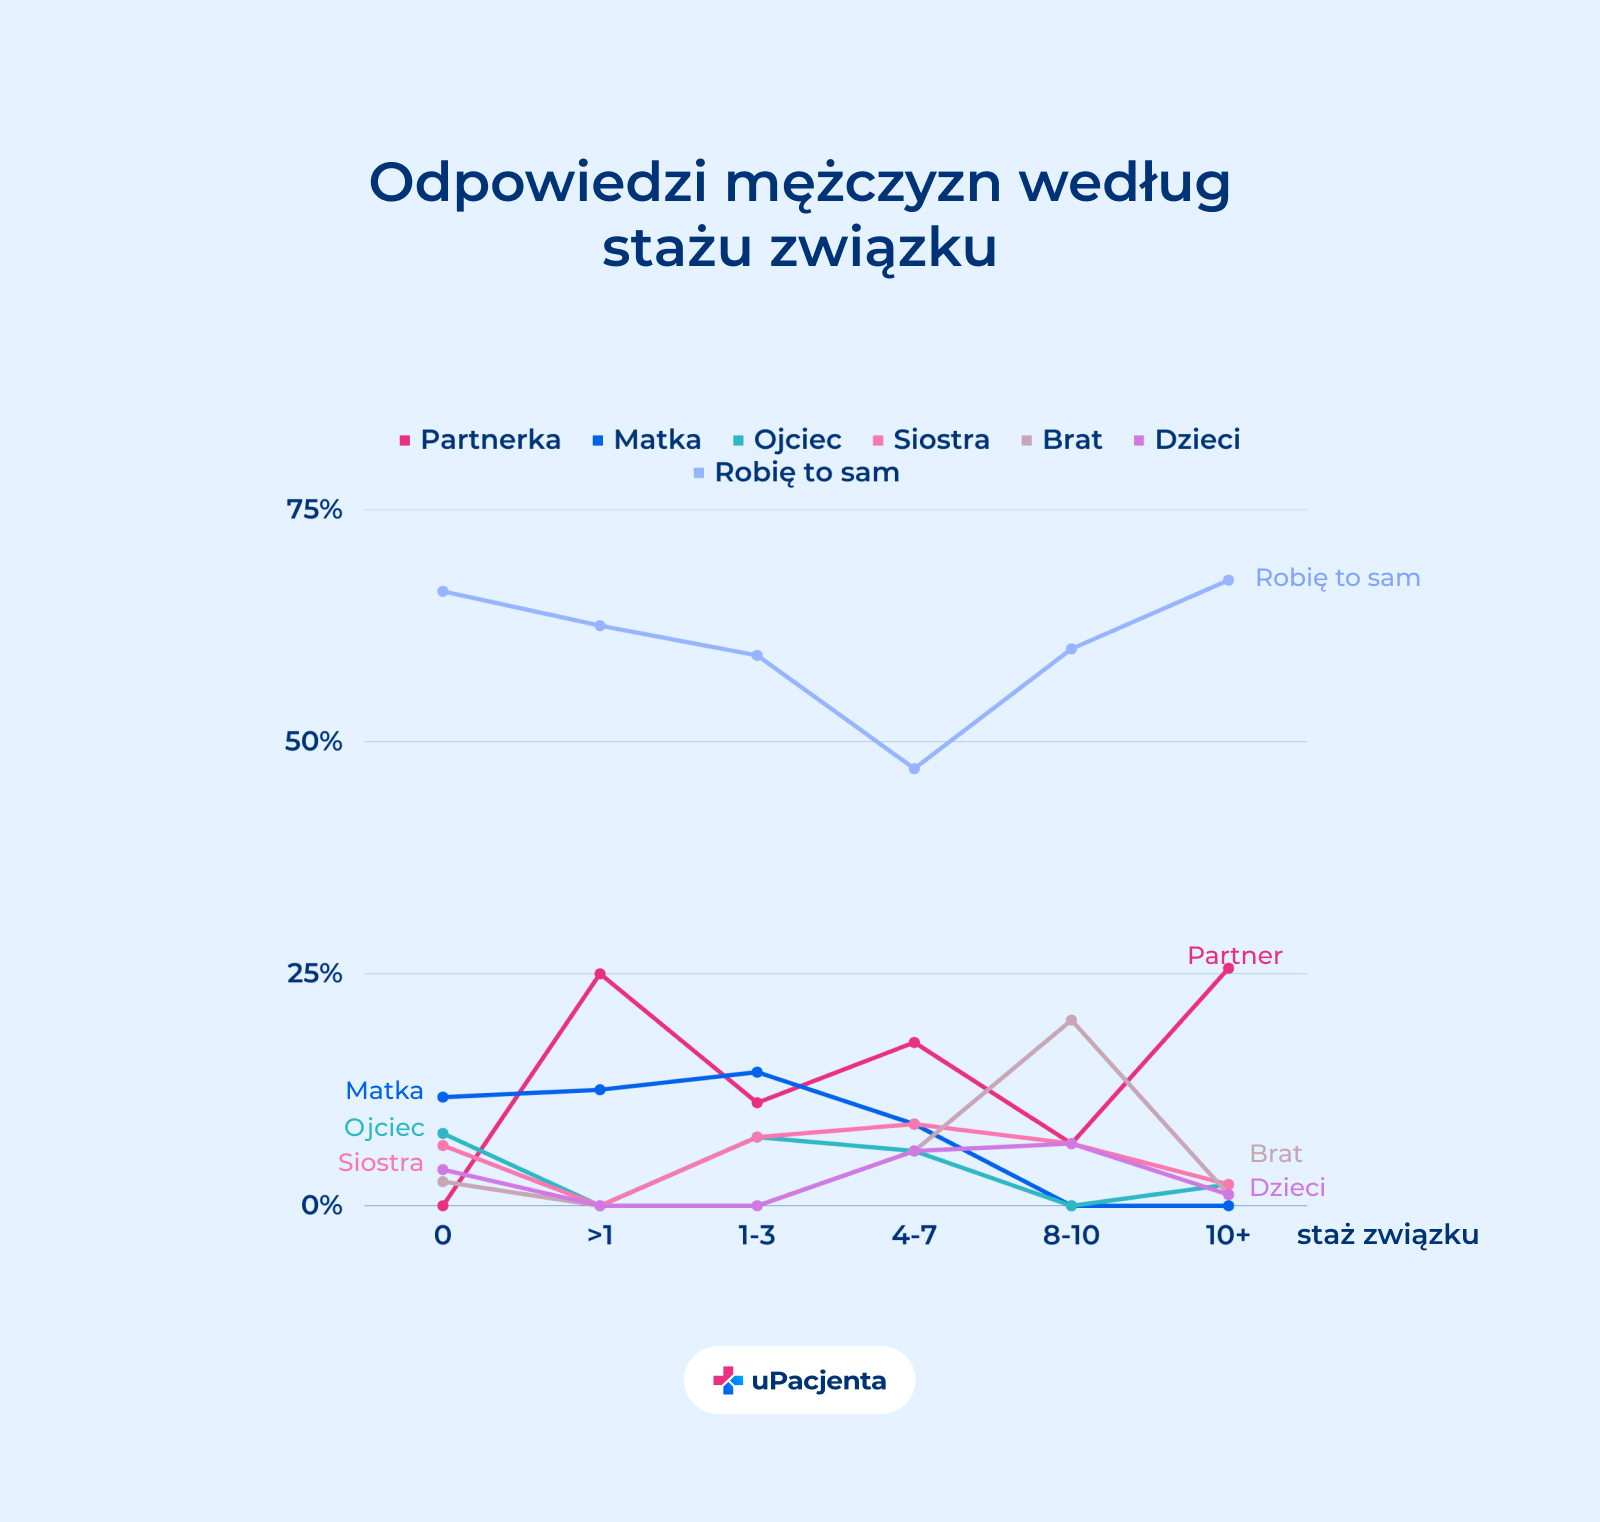 zdrowie mężczyzn w Polsce w rękach kobiet - Kto przypomina Ci o badaniach? Odpowiedzi mężczyzn wg stażu związku wykres